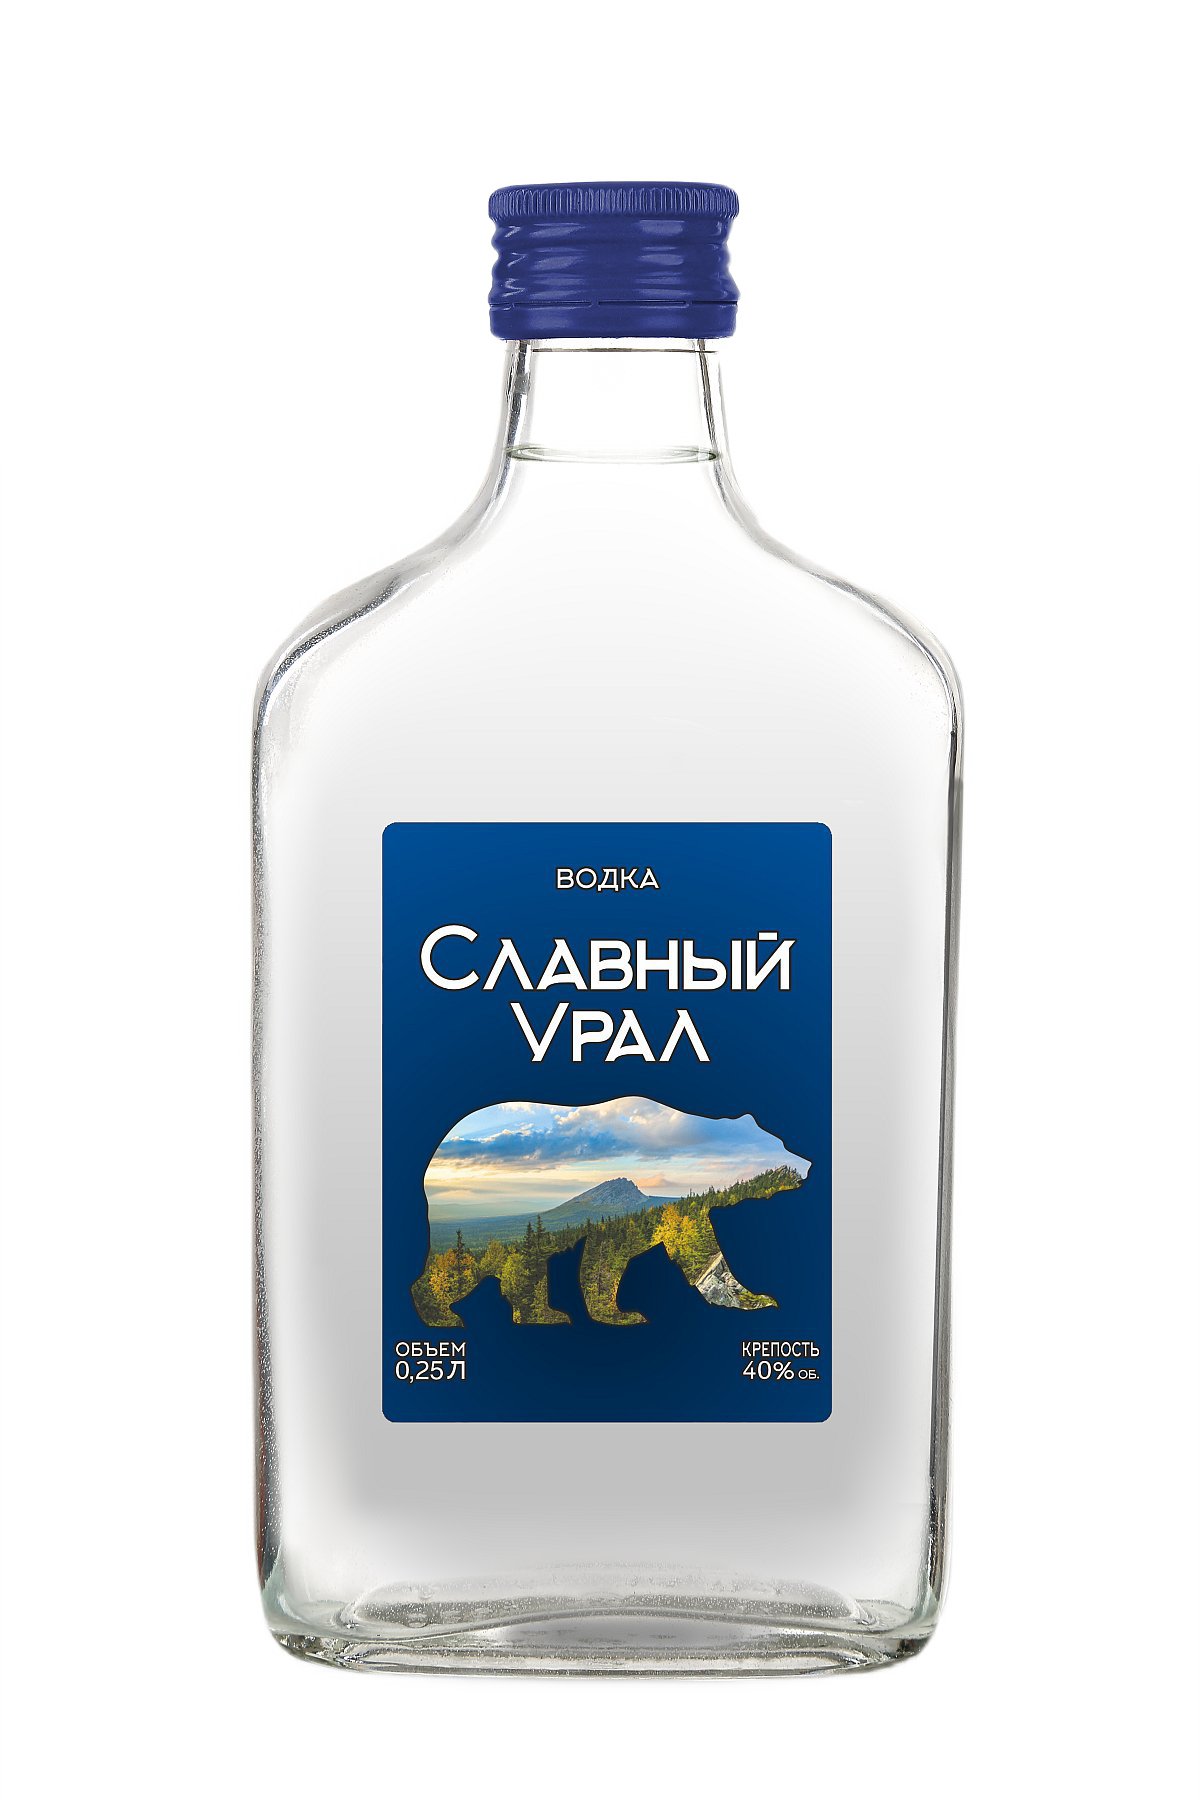 Slavniy Ural - 0.25 L : Slavniy Ural